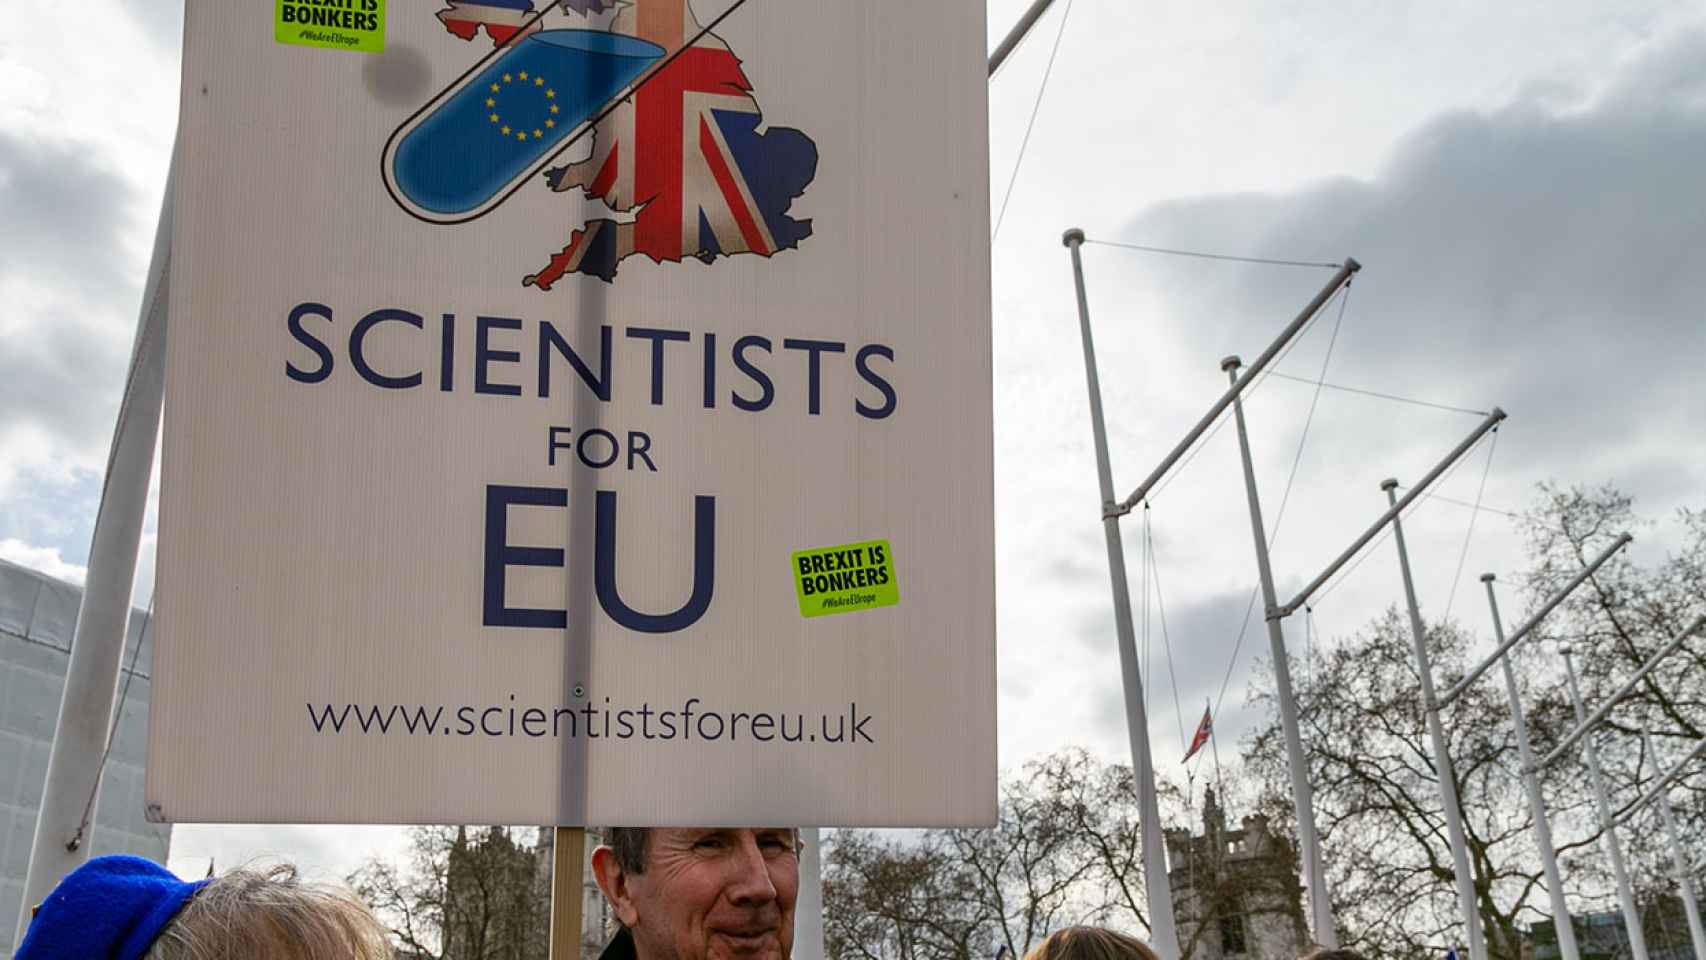 Dos manifestantes protestando por los efectos del Brexit en la investigación.